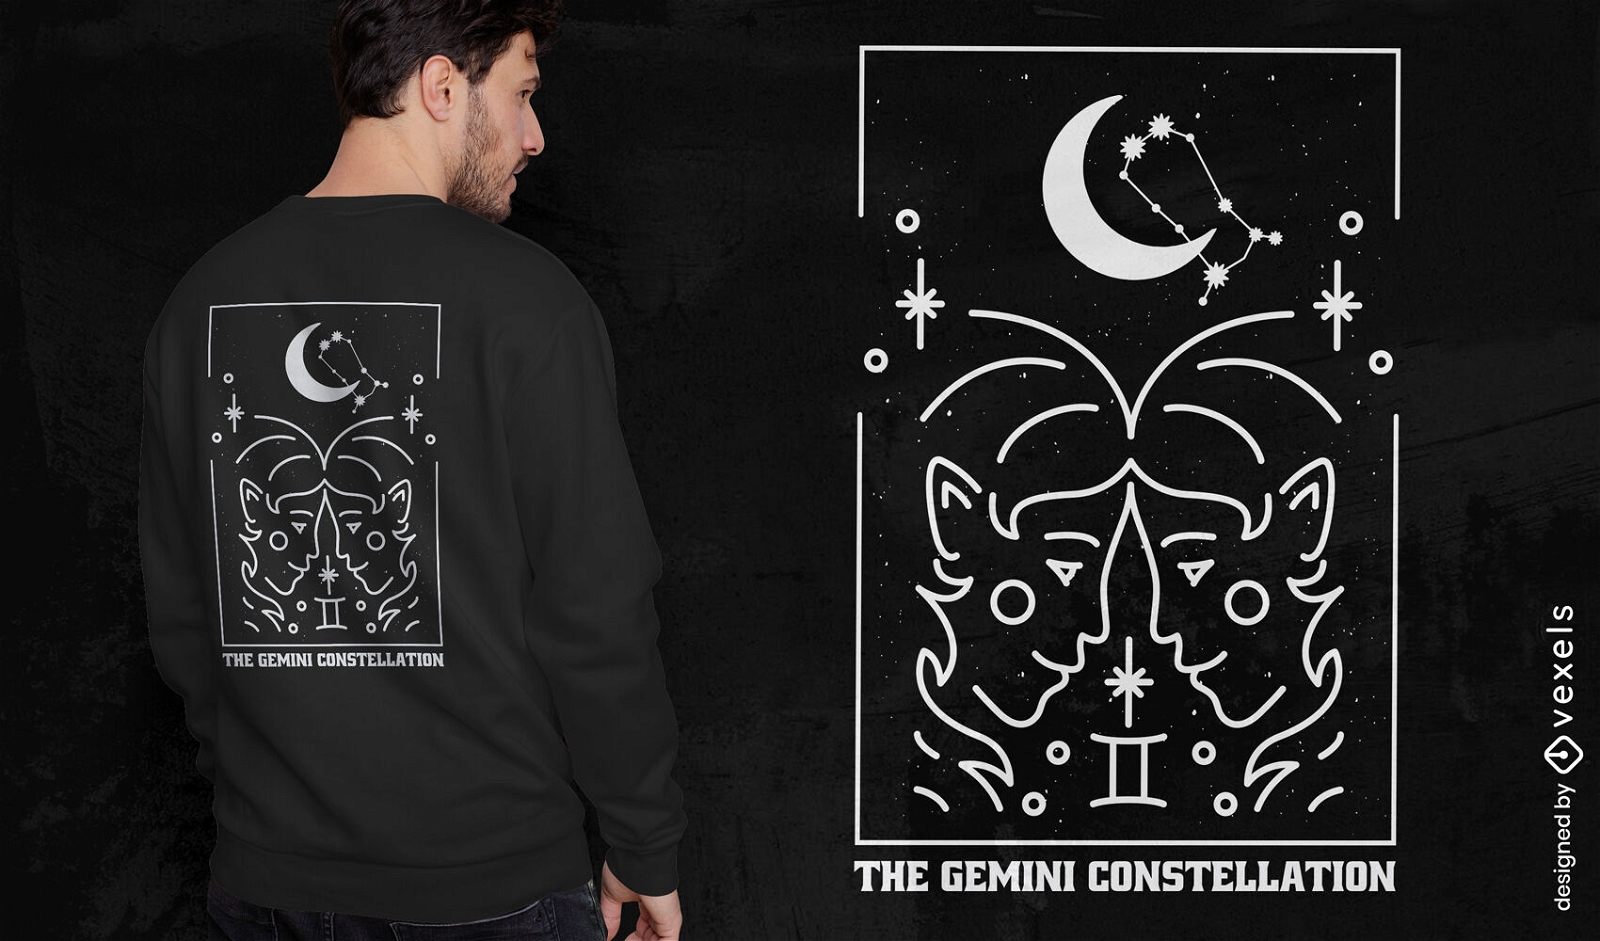 Gemini constellation t-shirt design